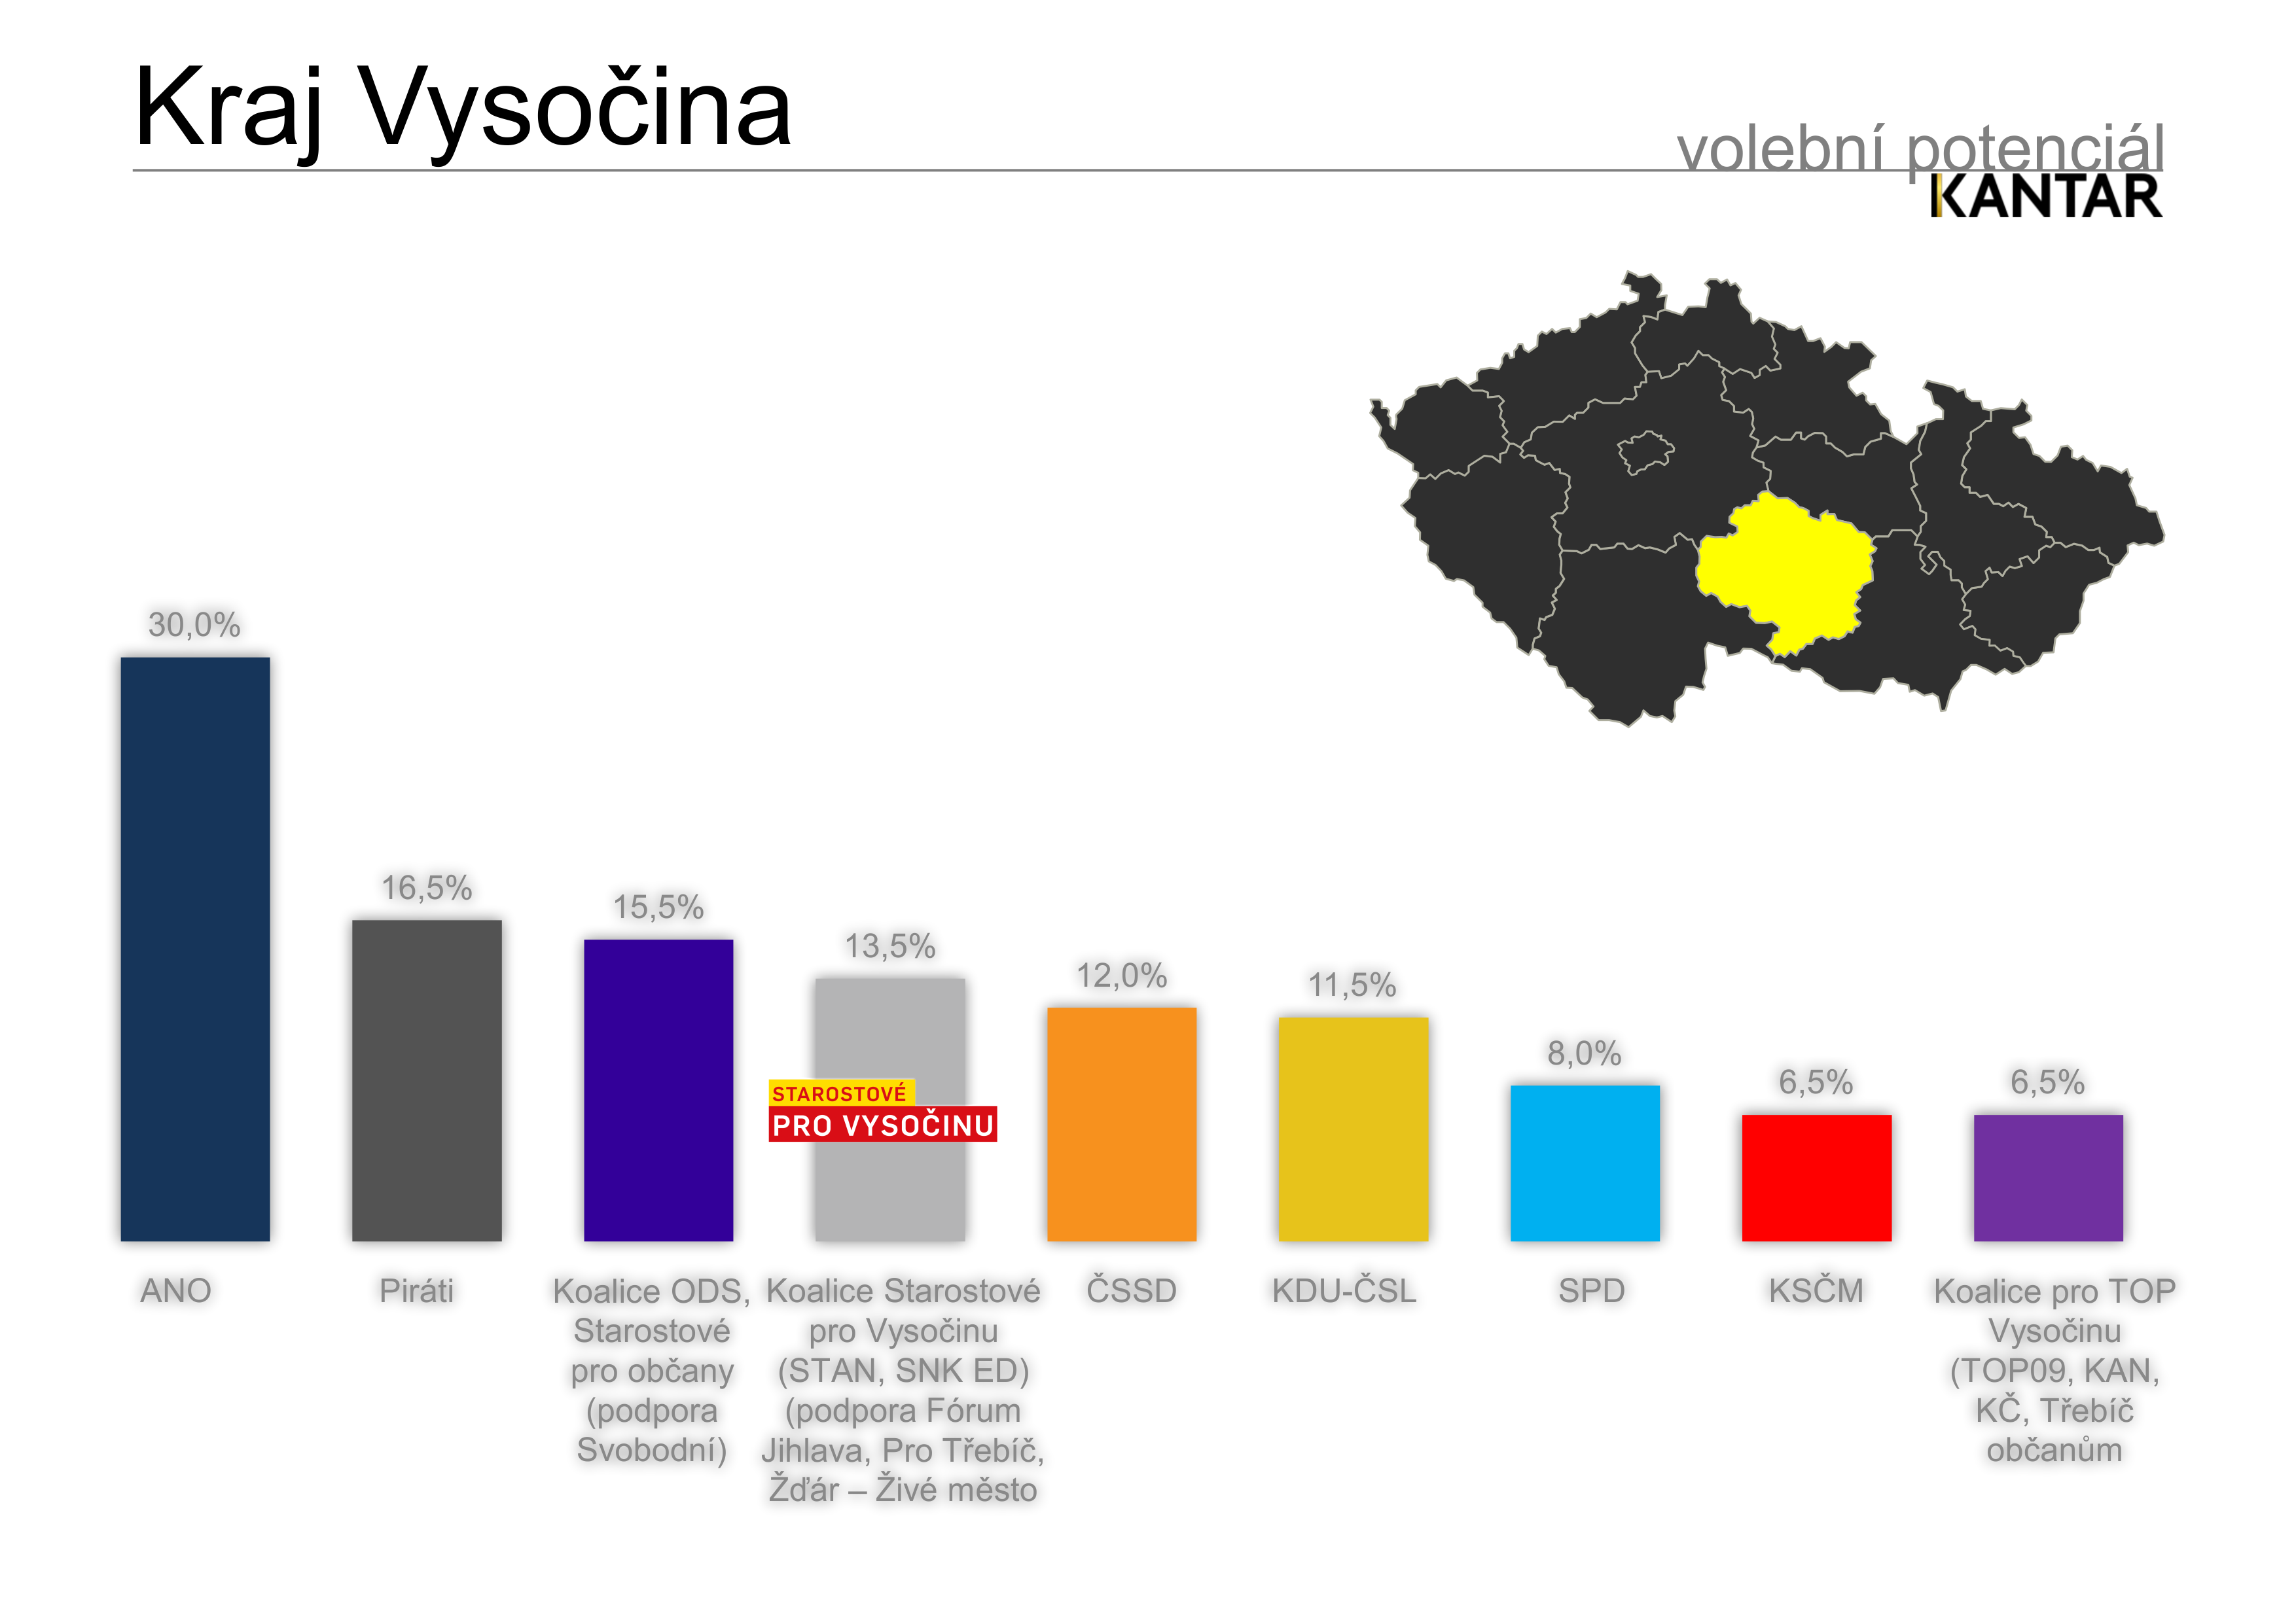 Volební potenciál - Kraj Vysočina